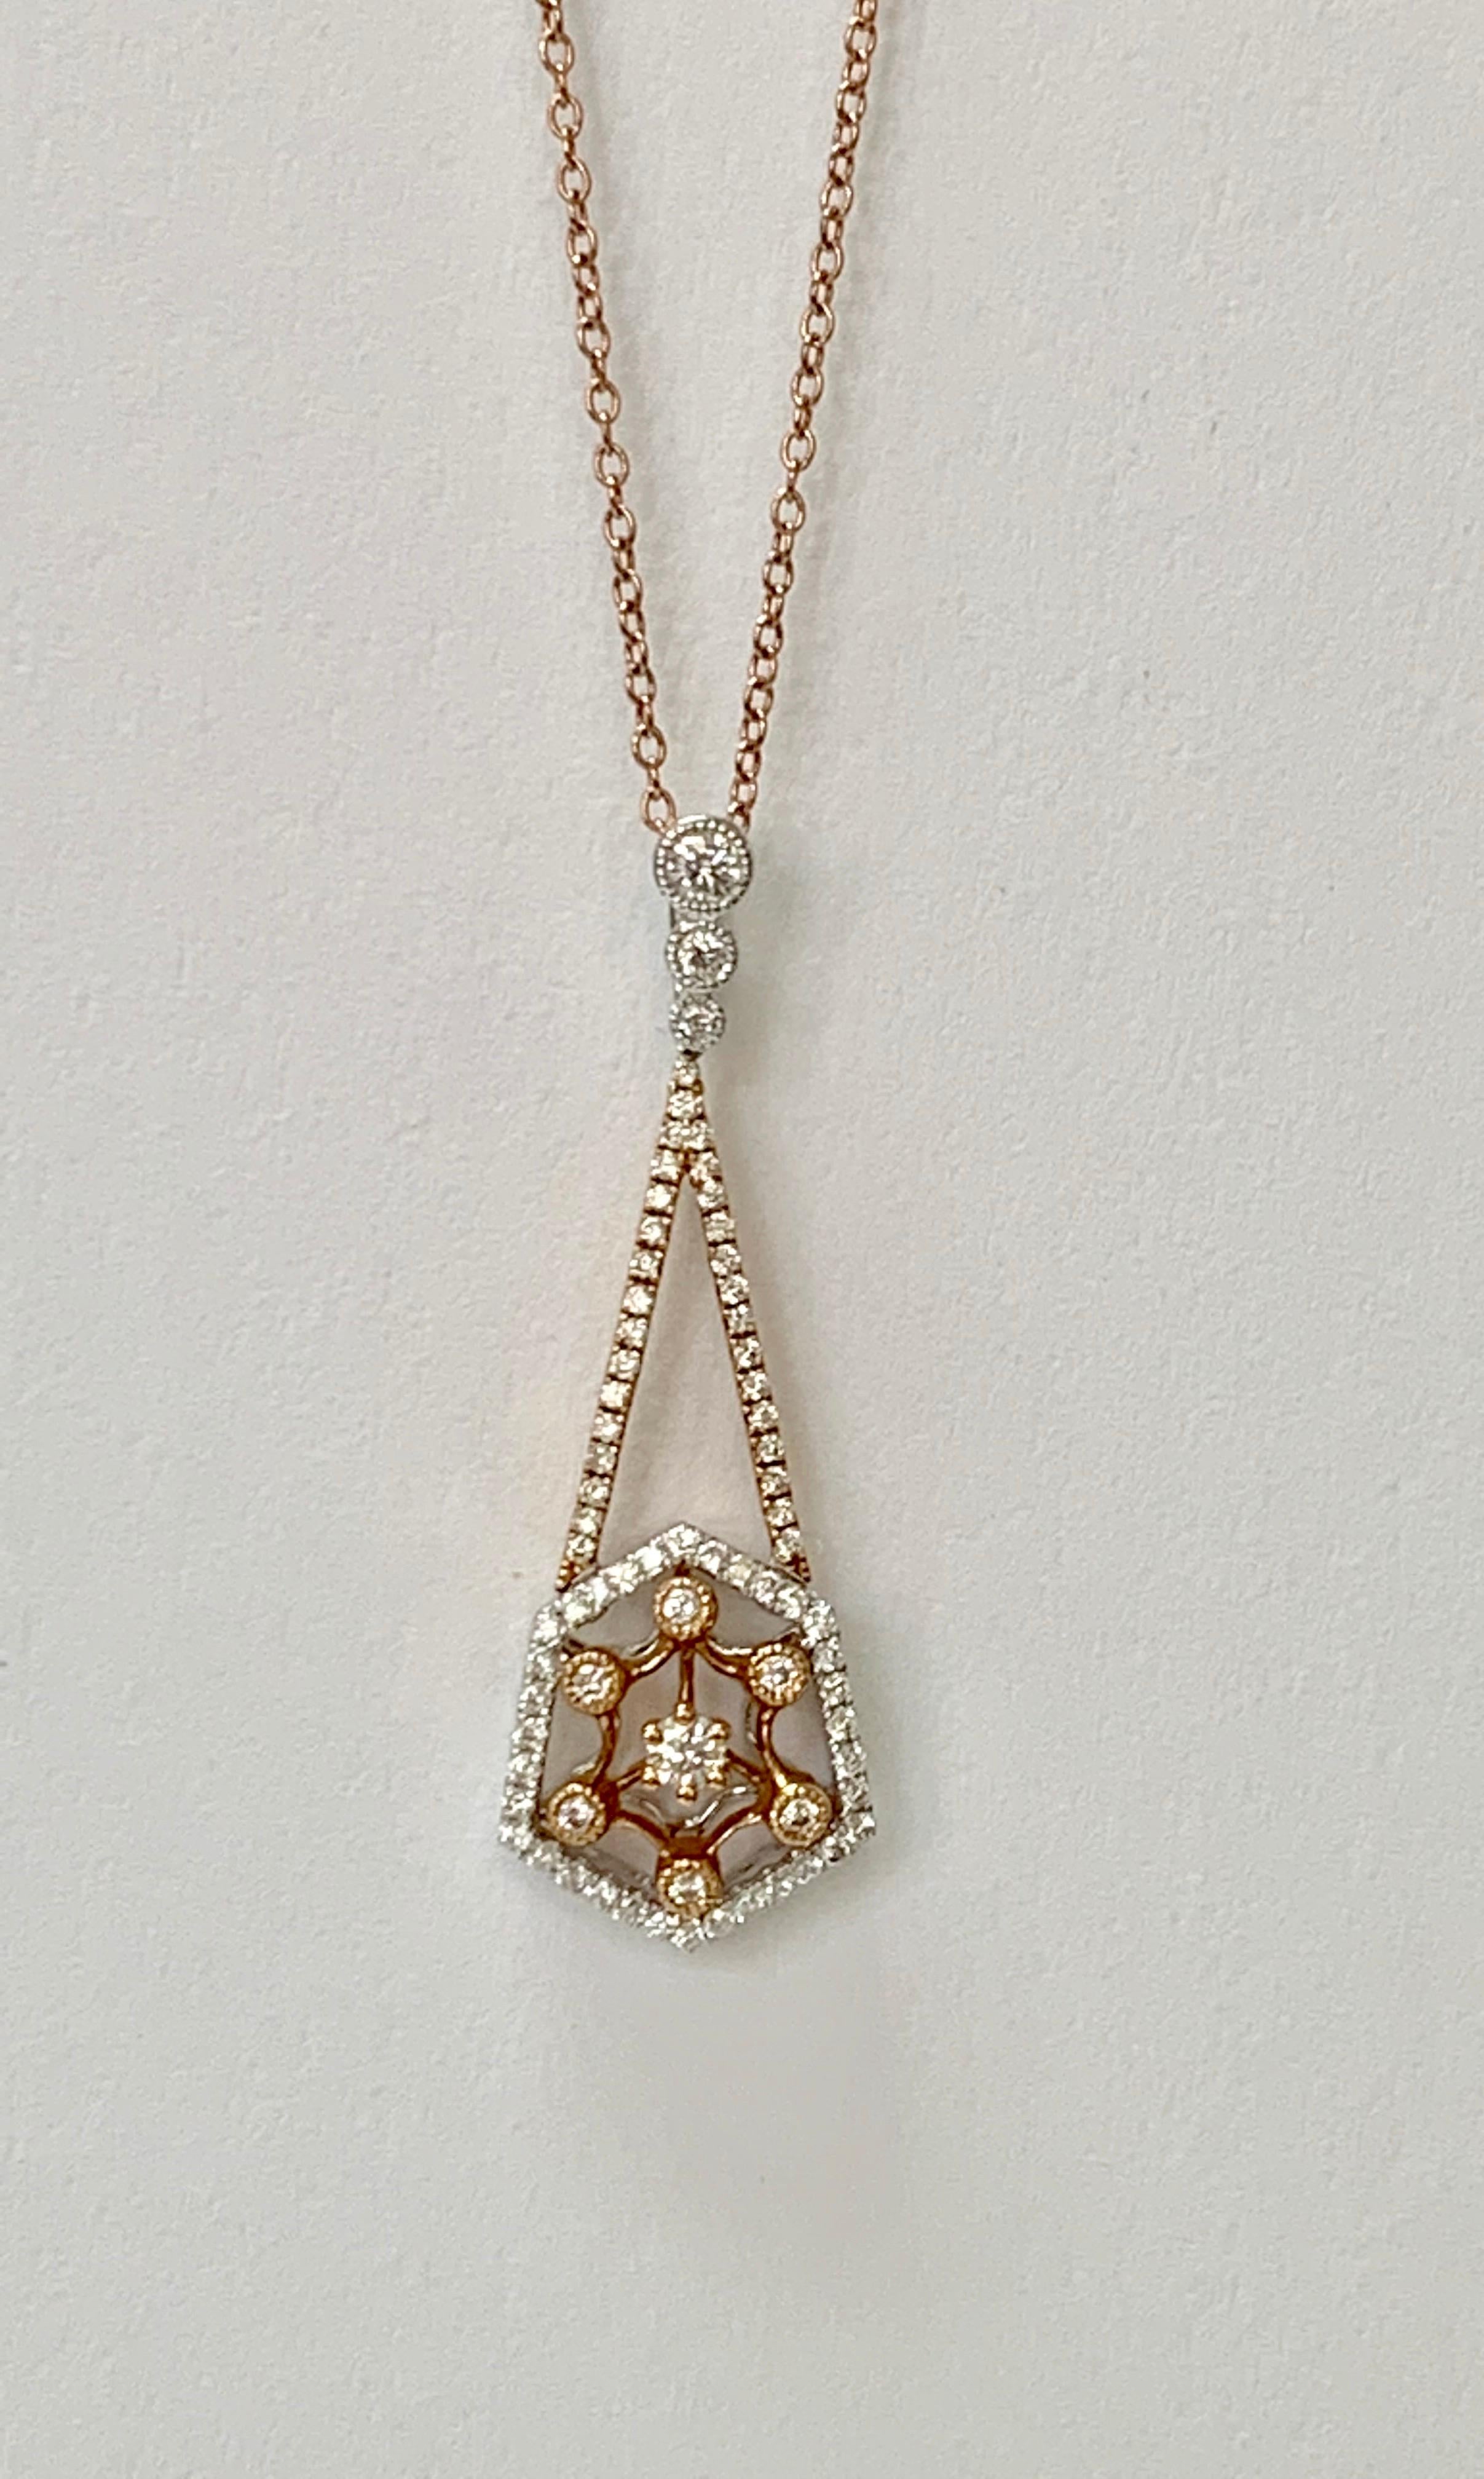 Très joli collier pendentif en diamants en or rose. 

Poids du diamant : 1,05 carat ( couleur GH et pureté VS ) 
Métal : or rose 
Mesure : 1 pouce 
